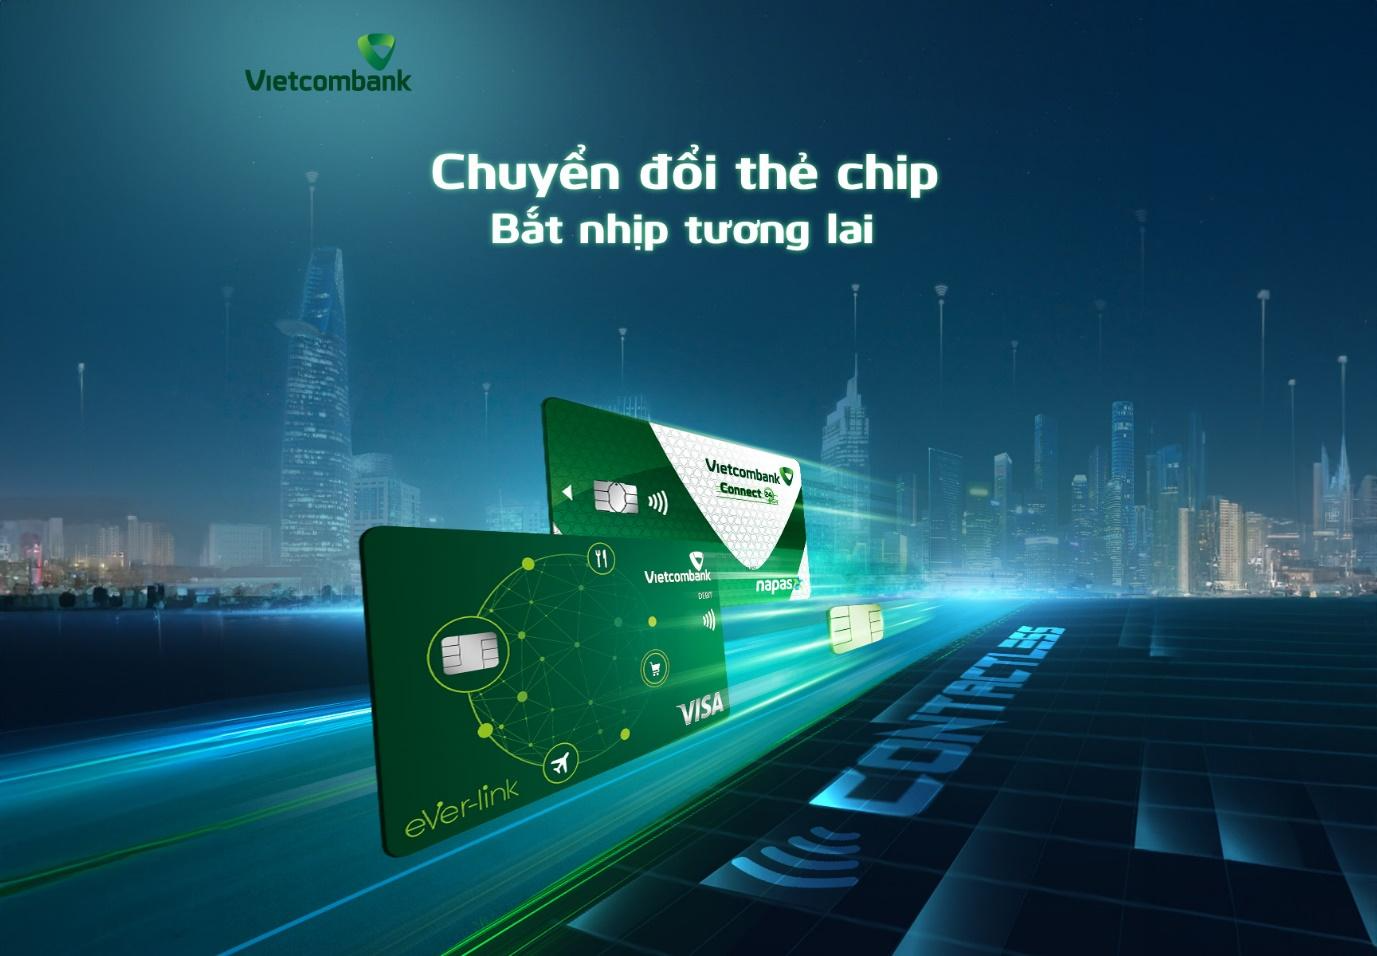 Chuyển đổi miễn phí, chi tiêu cuối năm như ý với thẻ Chip Vietcombank Contactless - 1